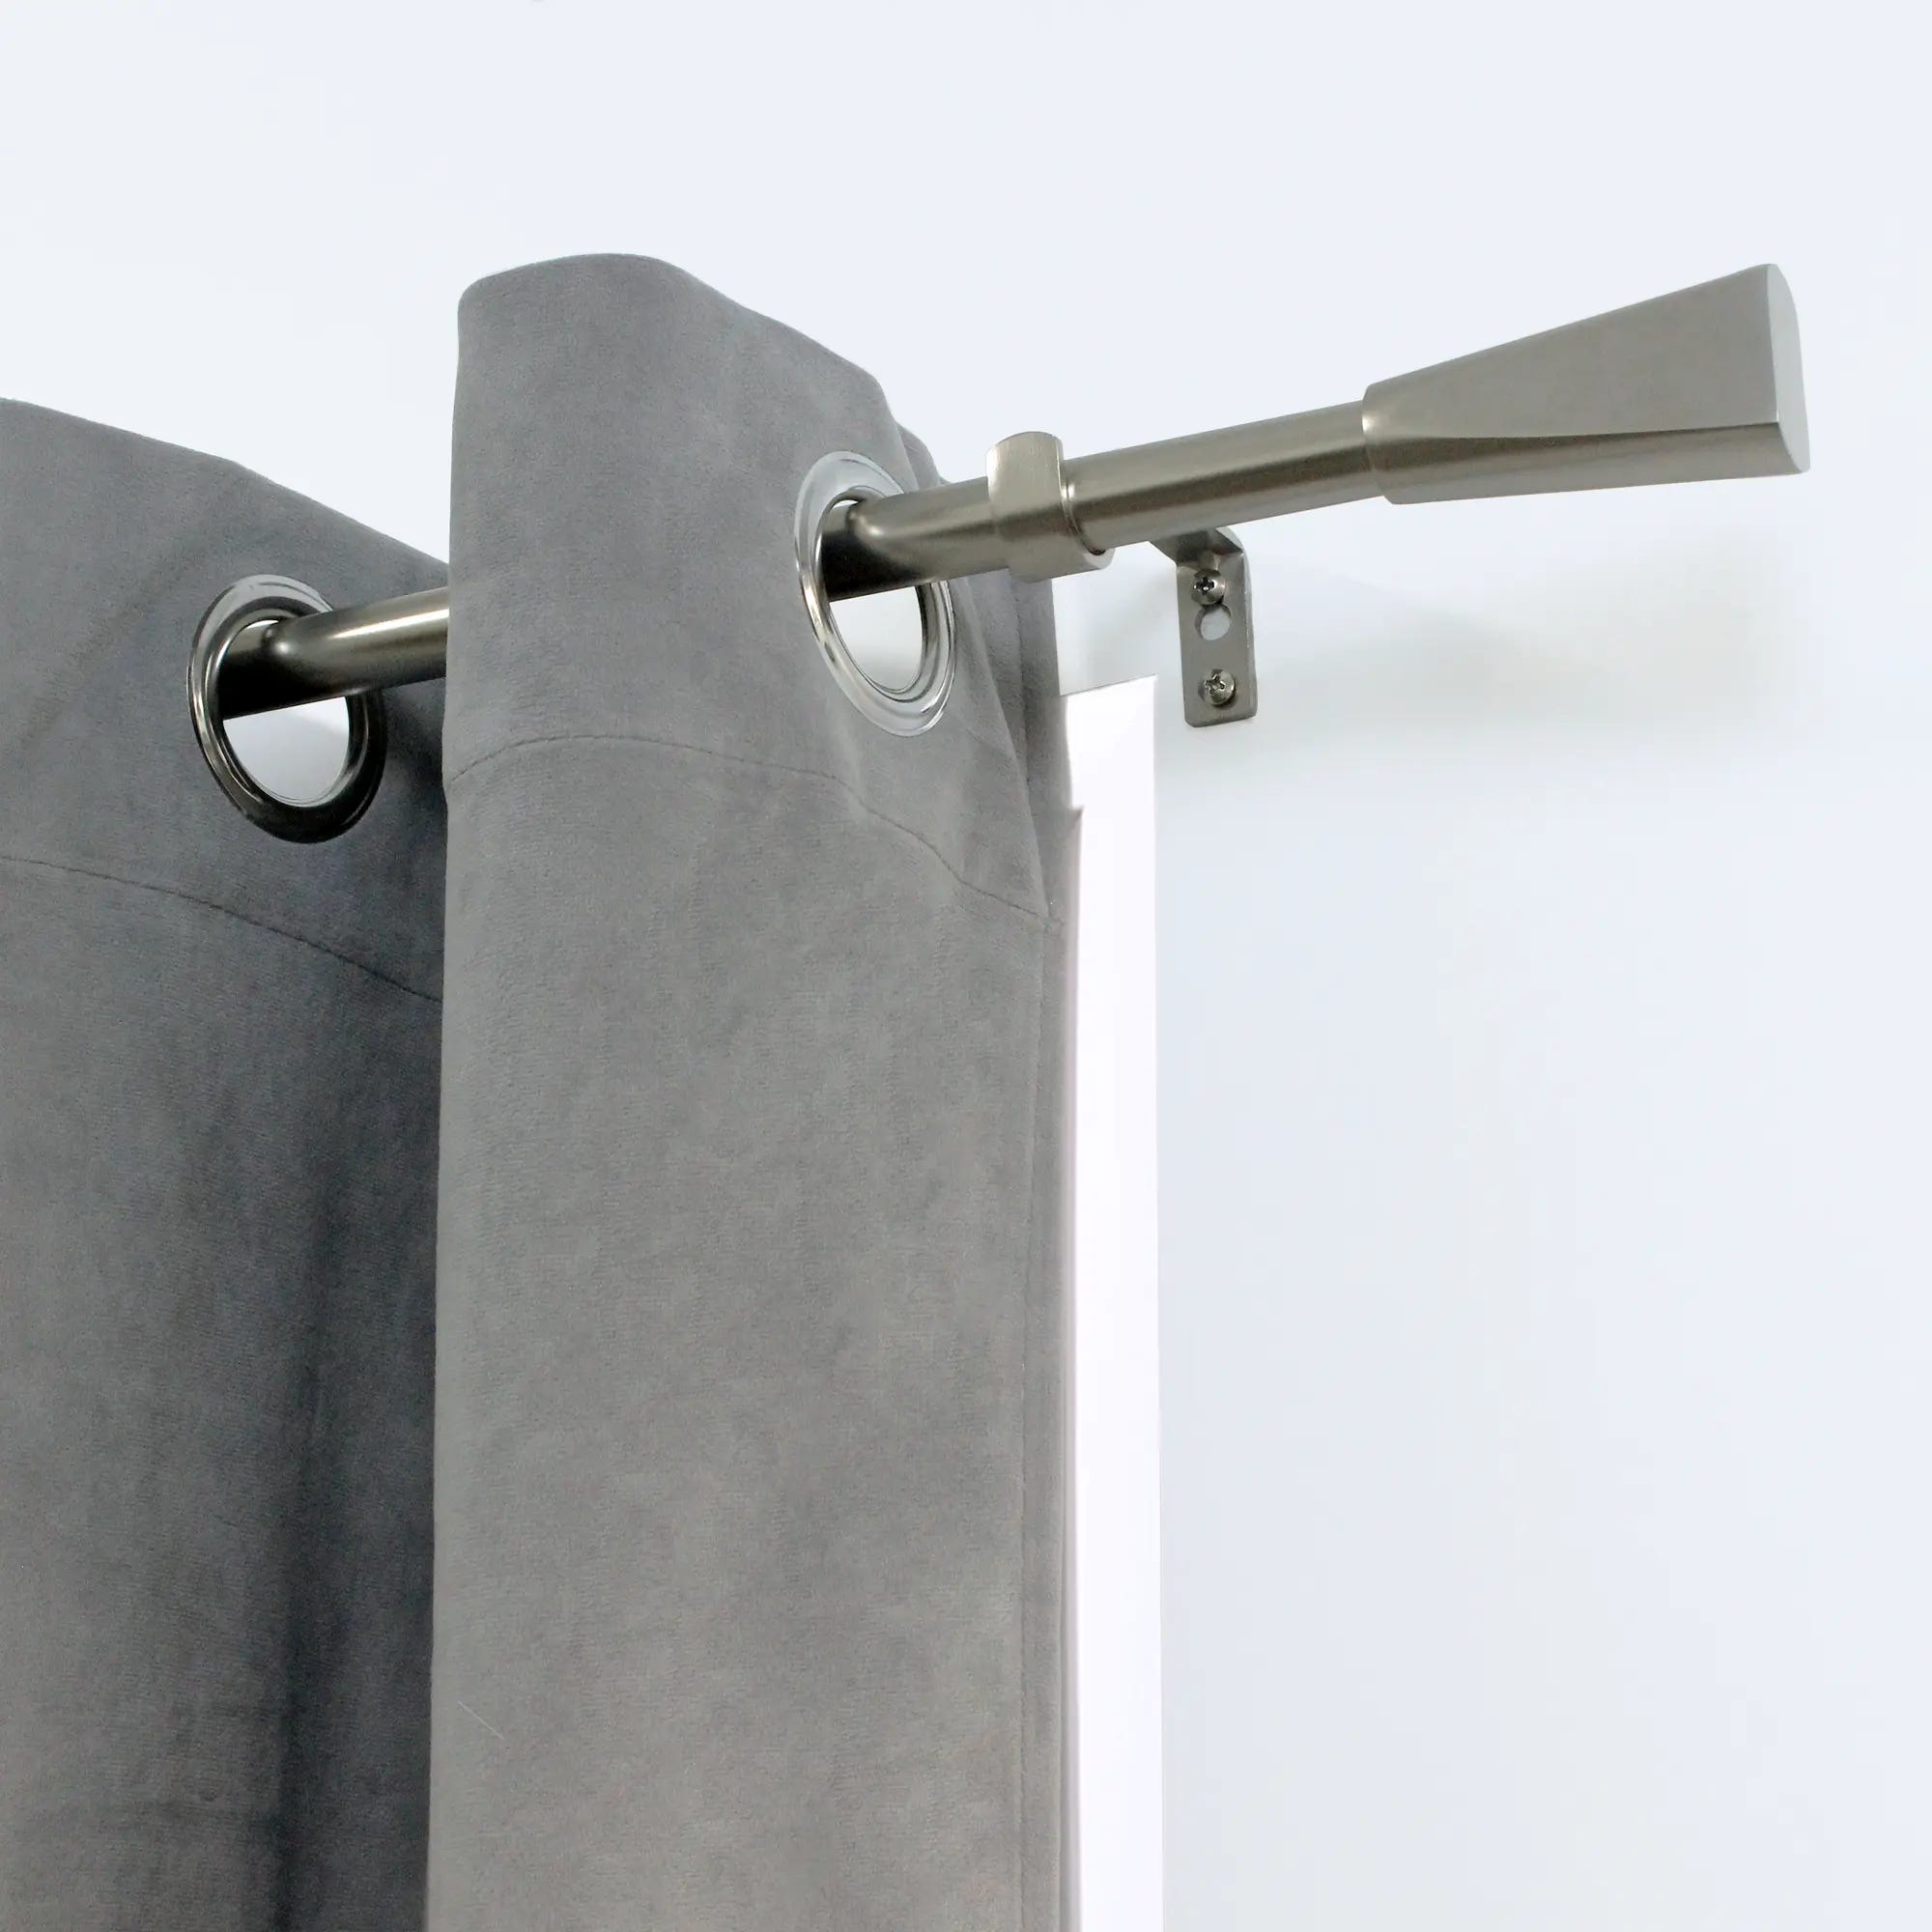 Kit bastone per tenda a pressione estensibile da 120 a 210 cm Pommel in  ferro verniciato grigio / argento Ø 19 mm INSPIRE